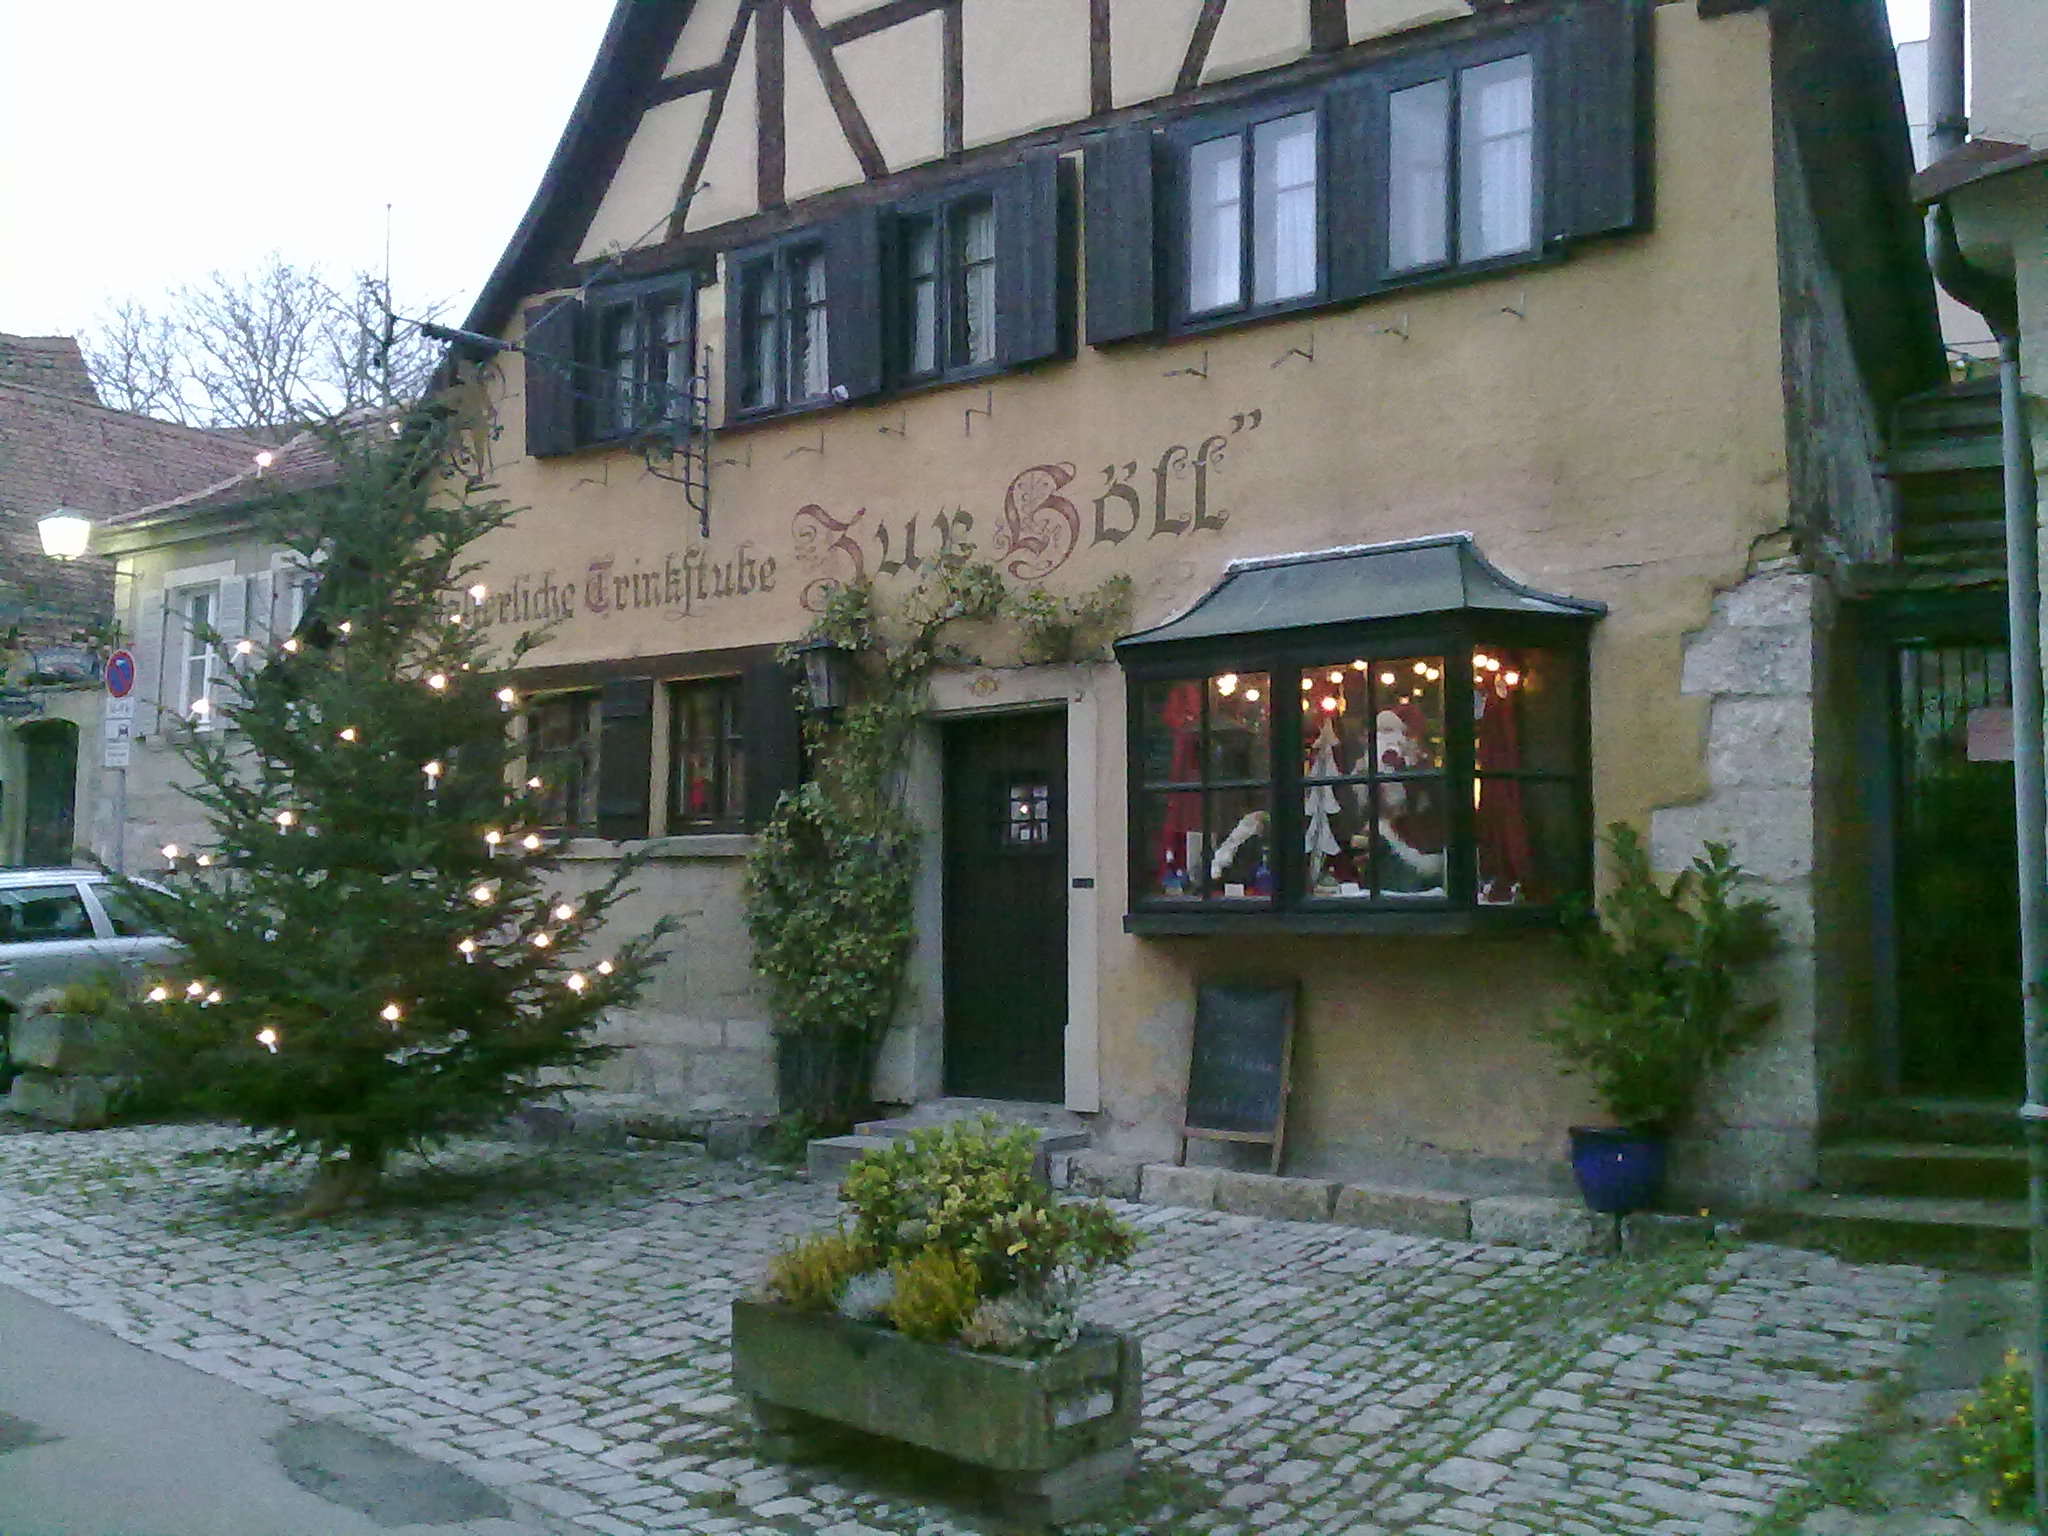 Restaurant "Zur Höll"